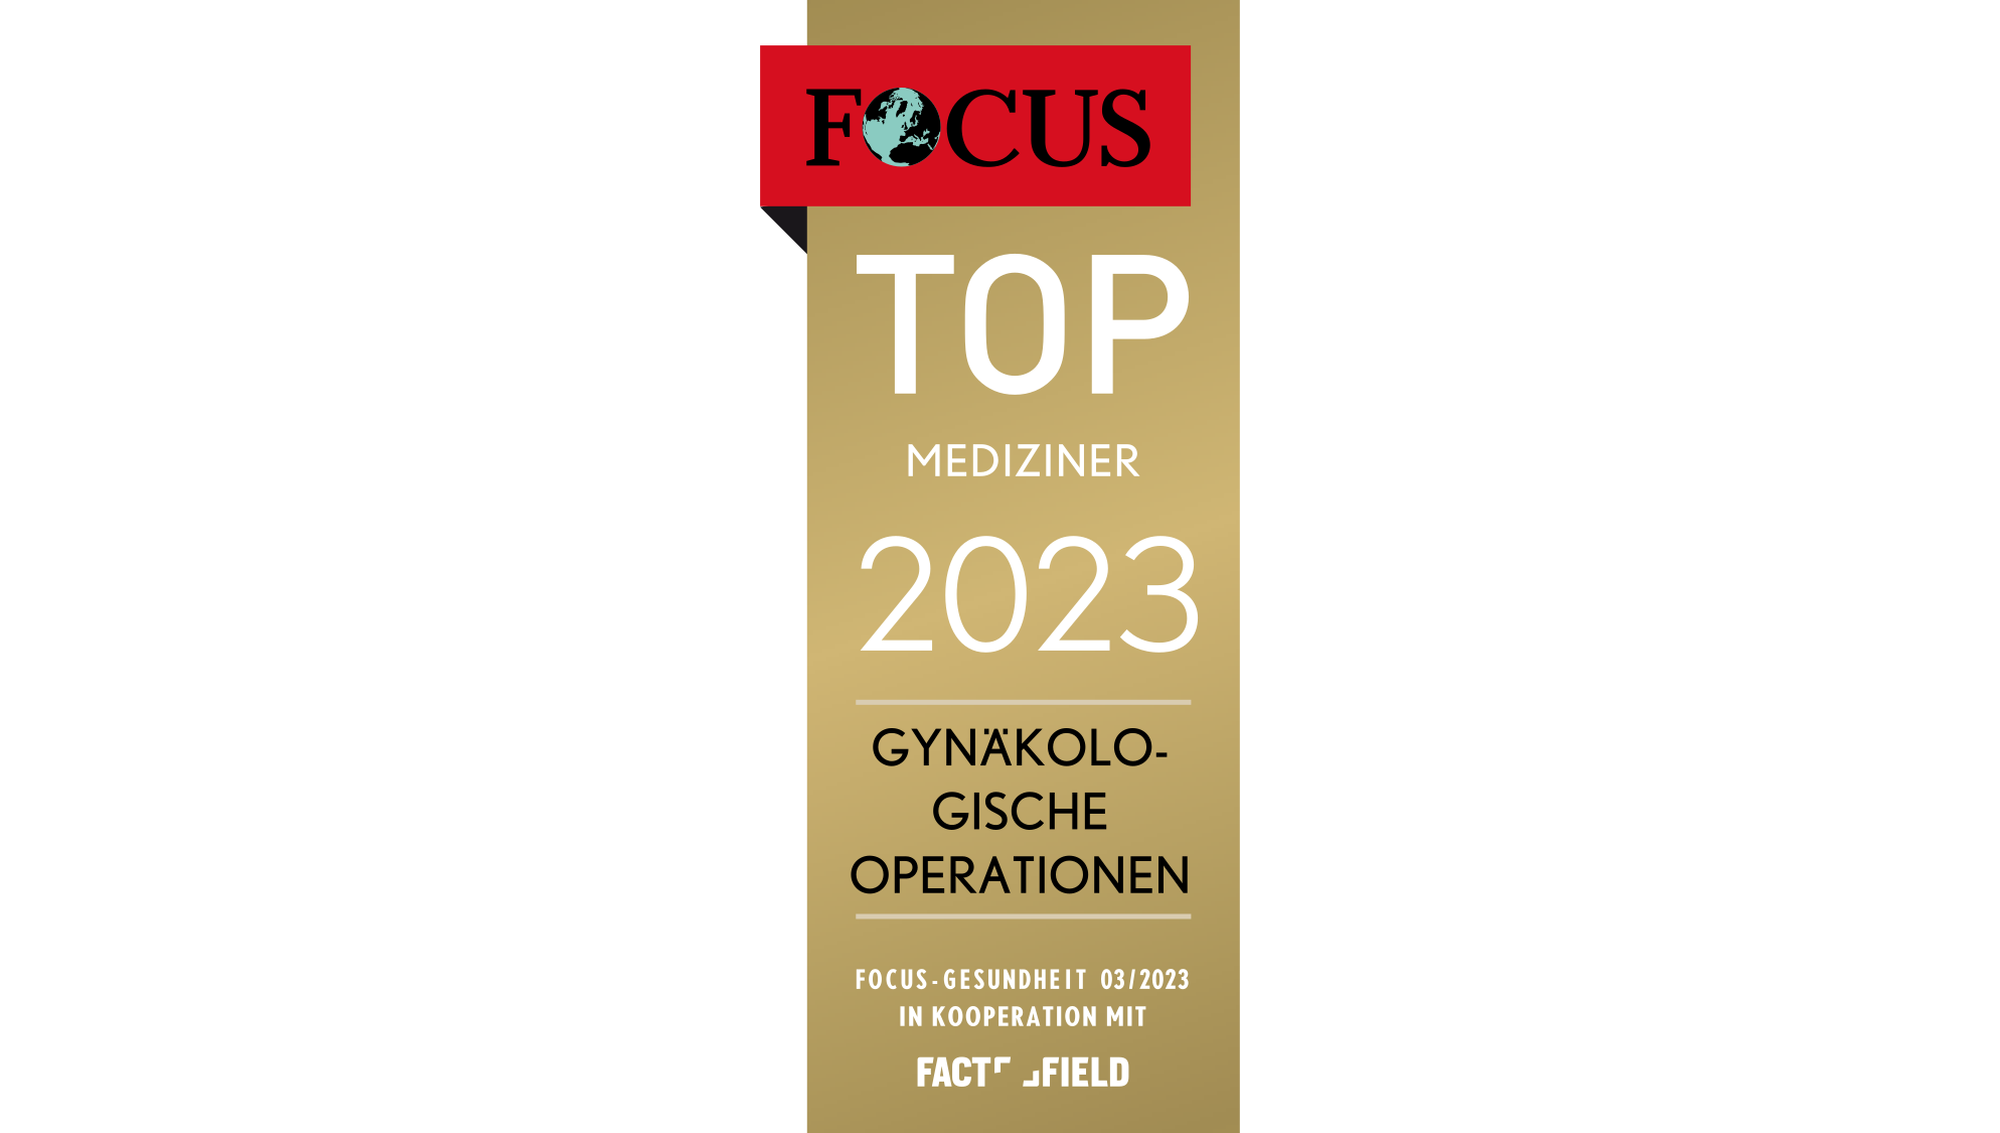 Focus Top Mediziner Gynäkologische Operationen